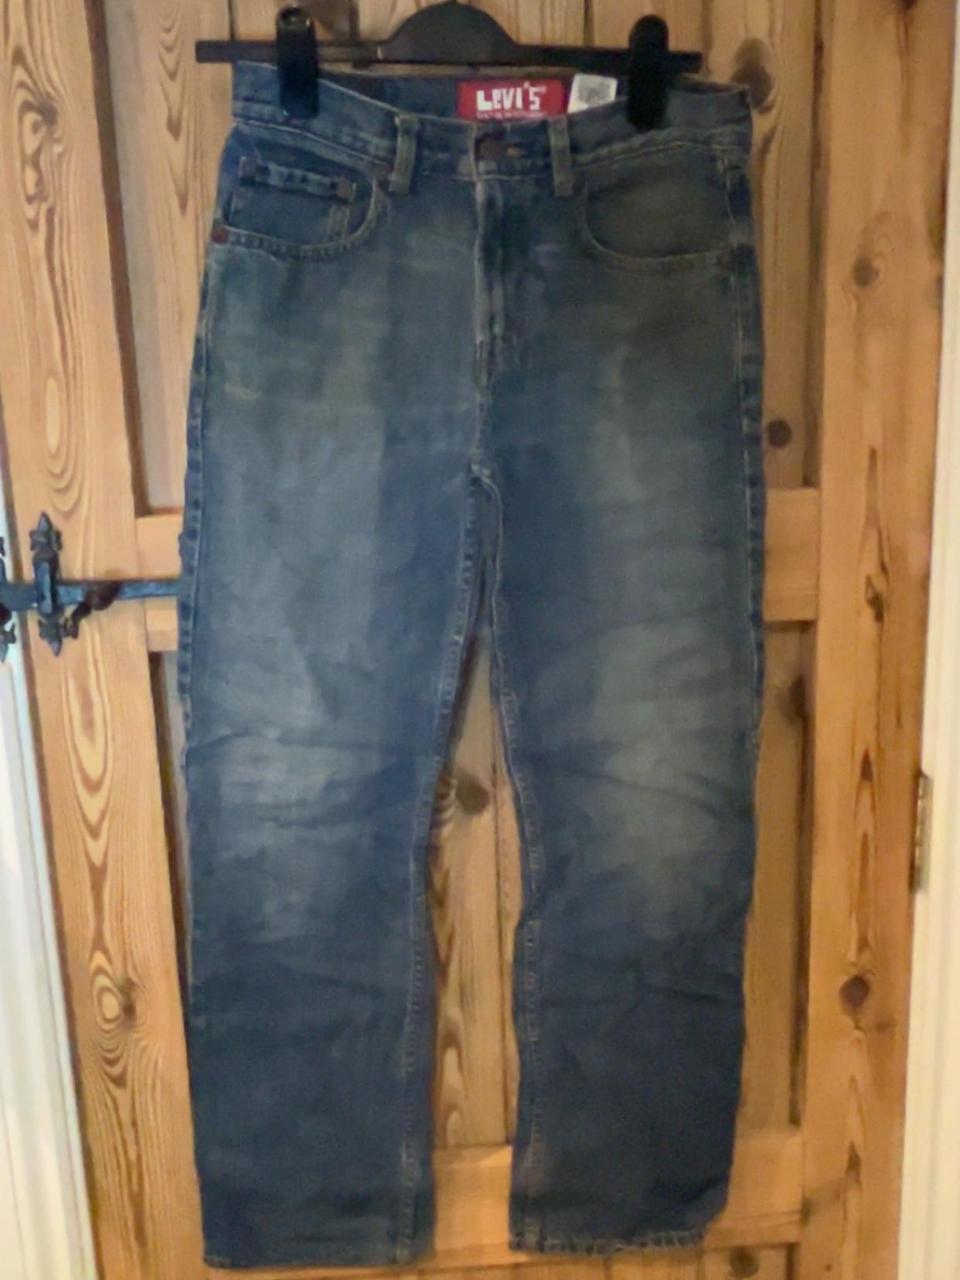 levi’s jeans worn old / vintage look will negotiate... - Depop